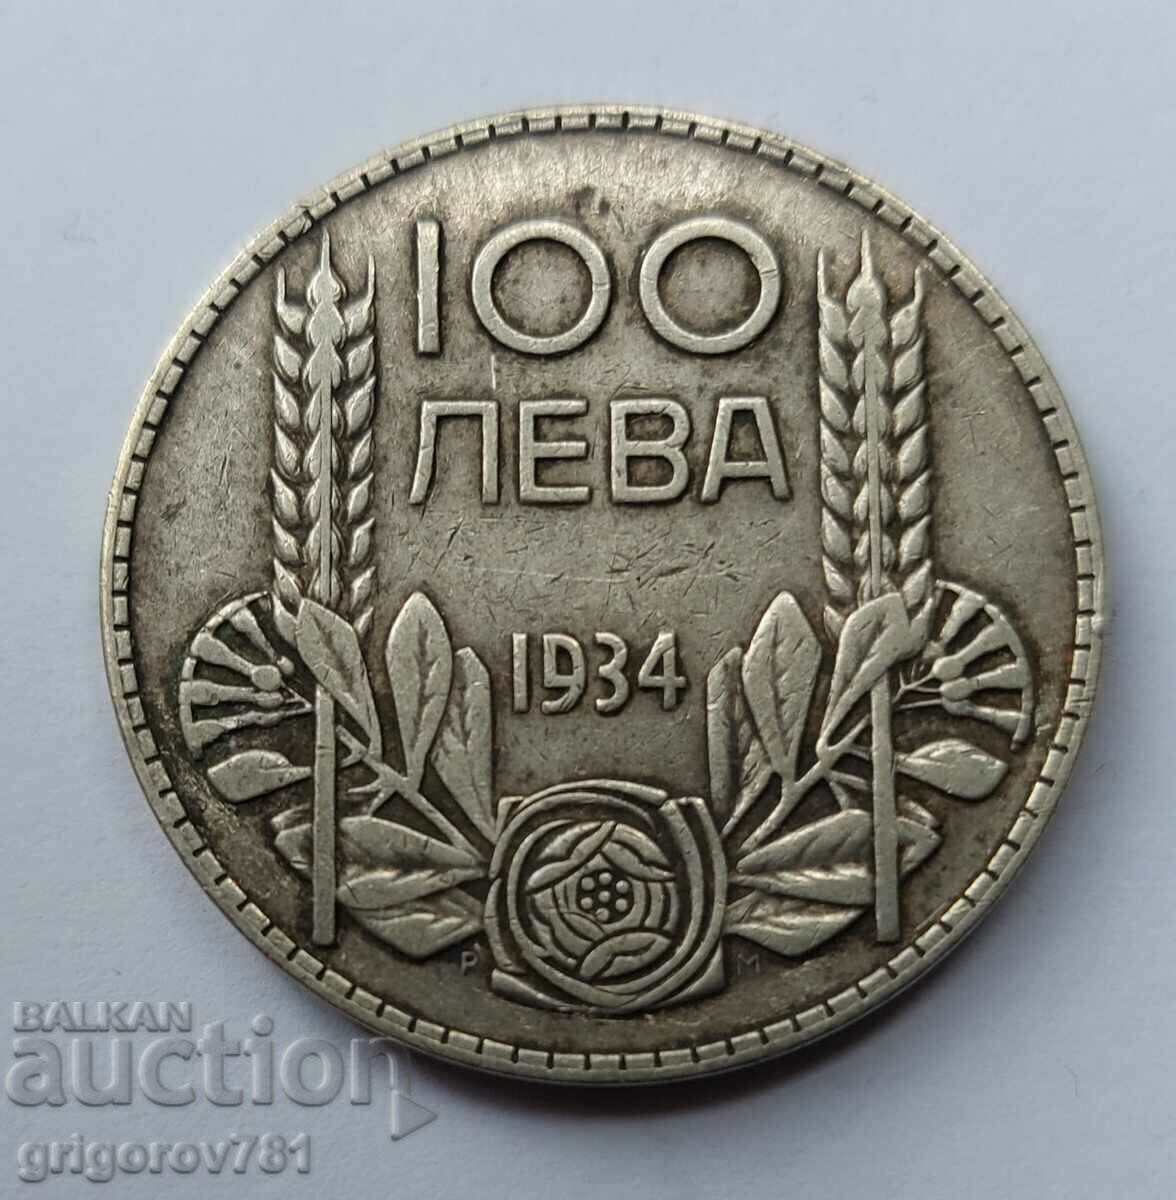 Ασήμι 100 λέβα Βουλγαρία 1934 - ασημένιο νόμισμα #16